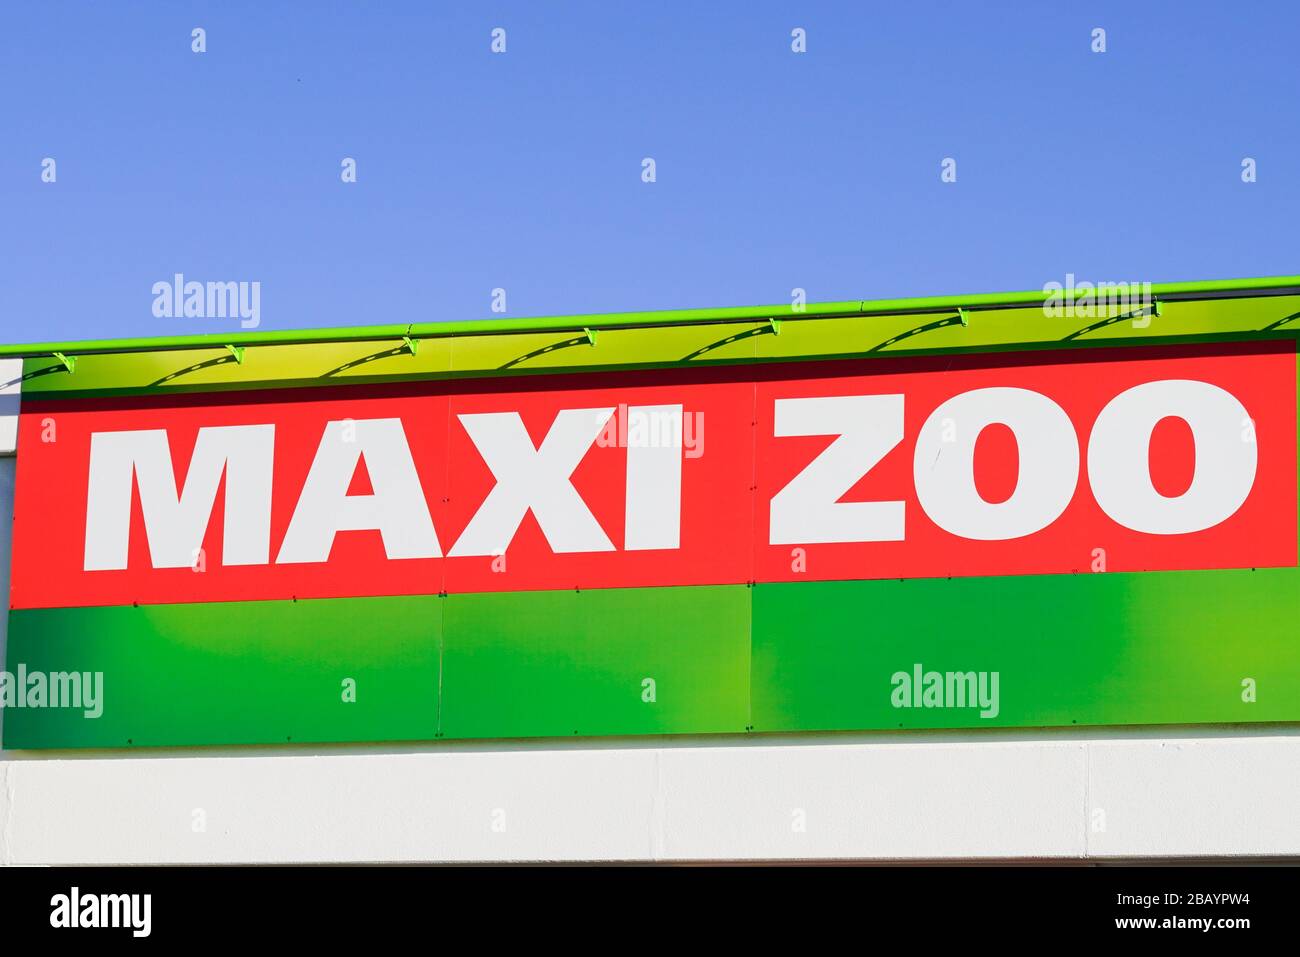 Bordeaux , Aquitaine / France - 03 15 2020 : maxi zoo logo boutique jardin centre boutique amélioration de la maison marque Banque D'Images